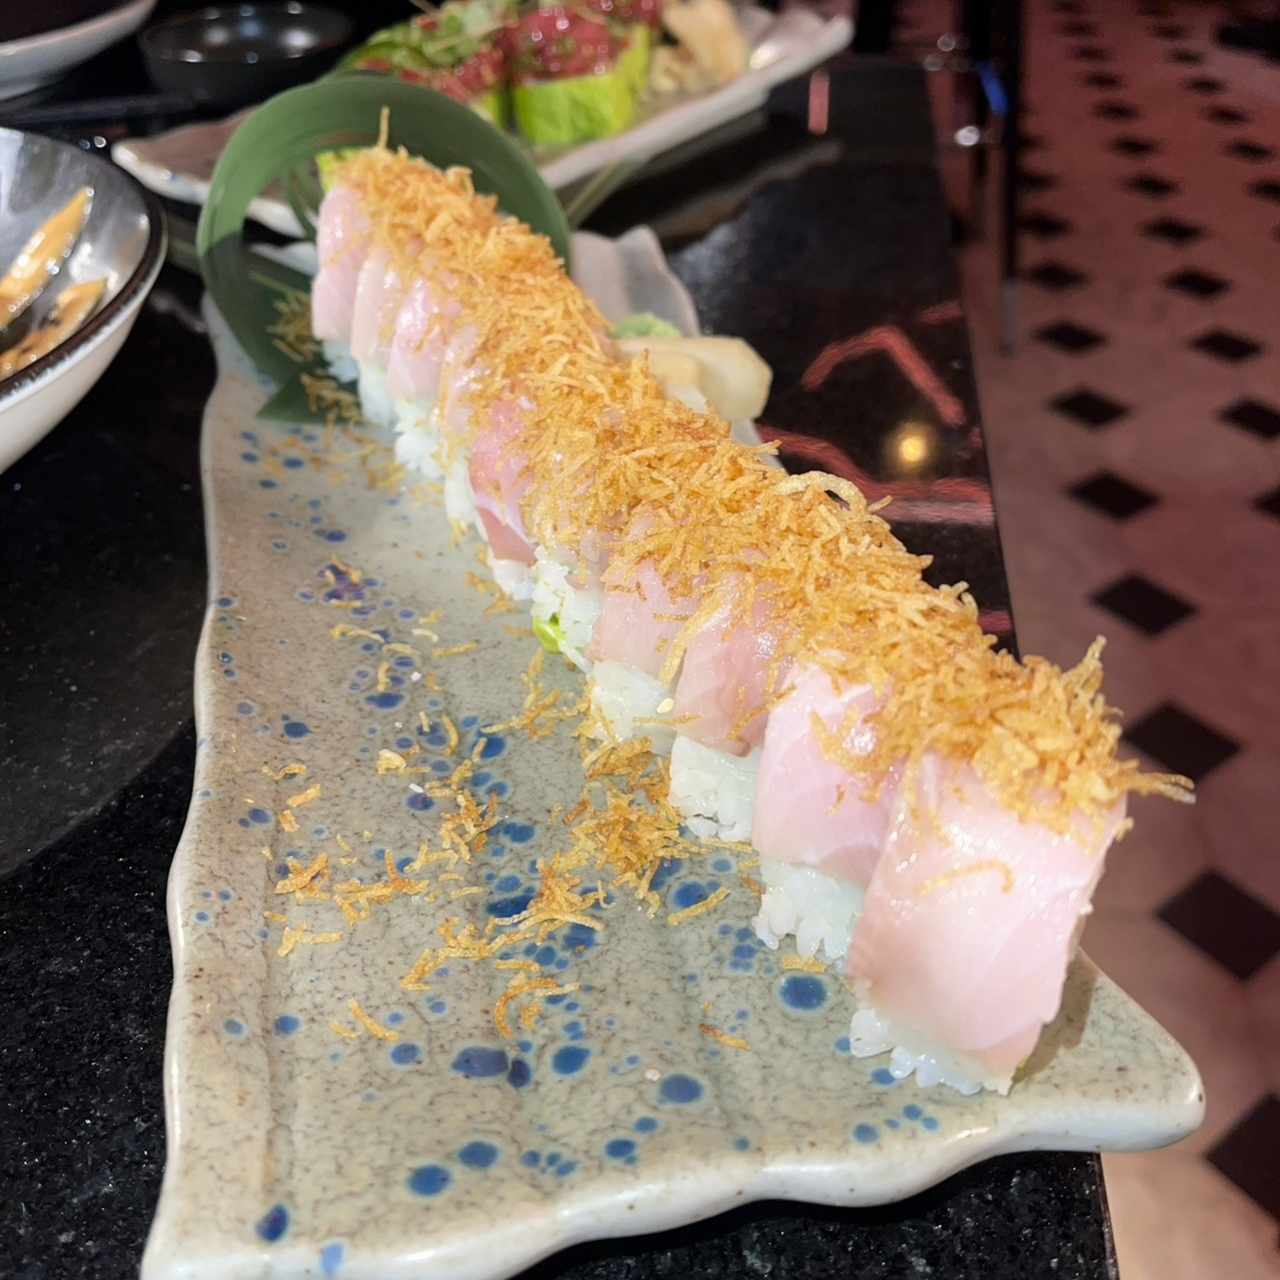 Sushi Bar - Negi Hamachi Truffle